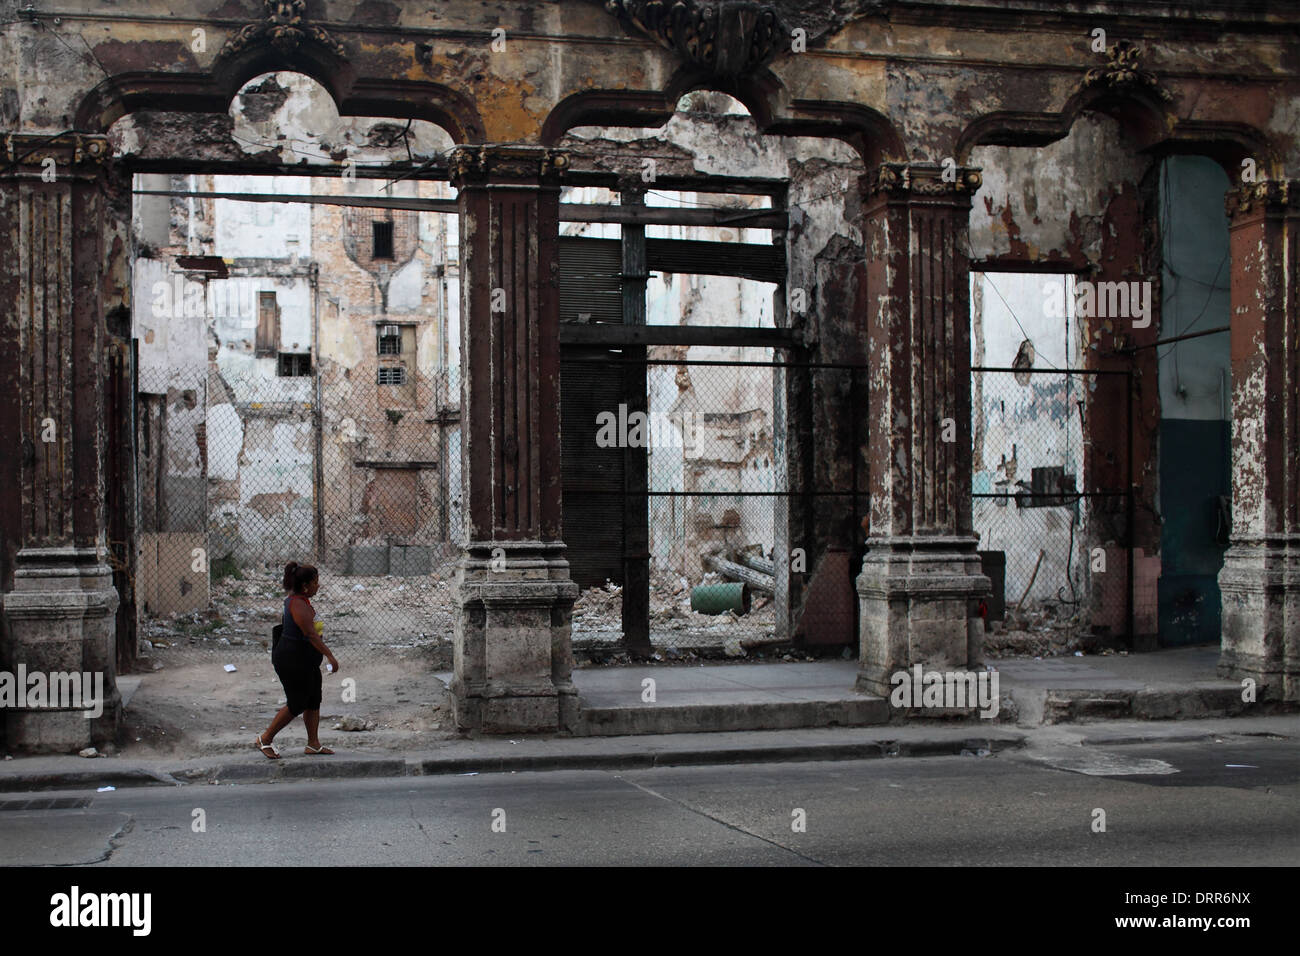 Cuba, La Havane - Scène de rue de La Havane Vieille Ville Photo : pixstory / Alamy Banque D'Images